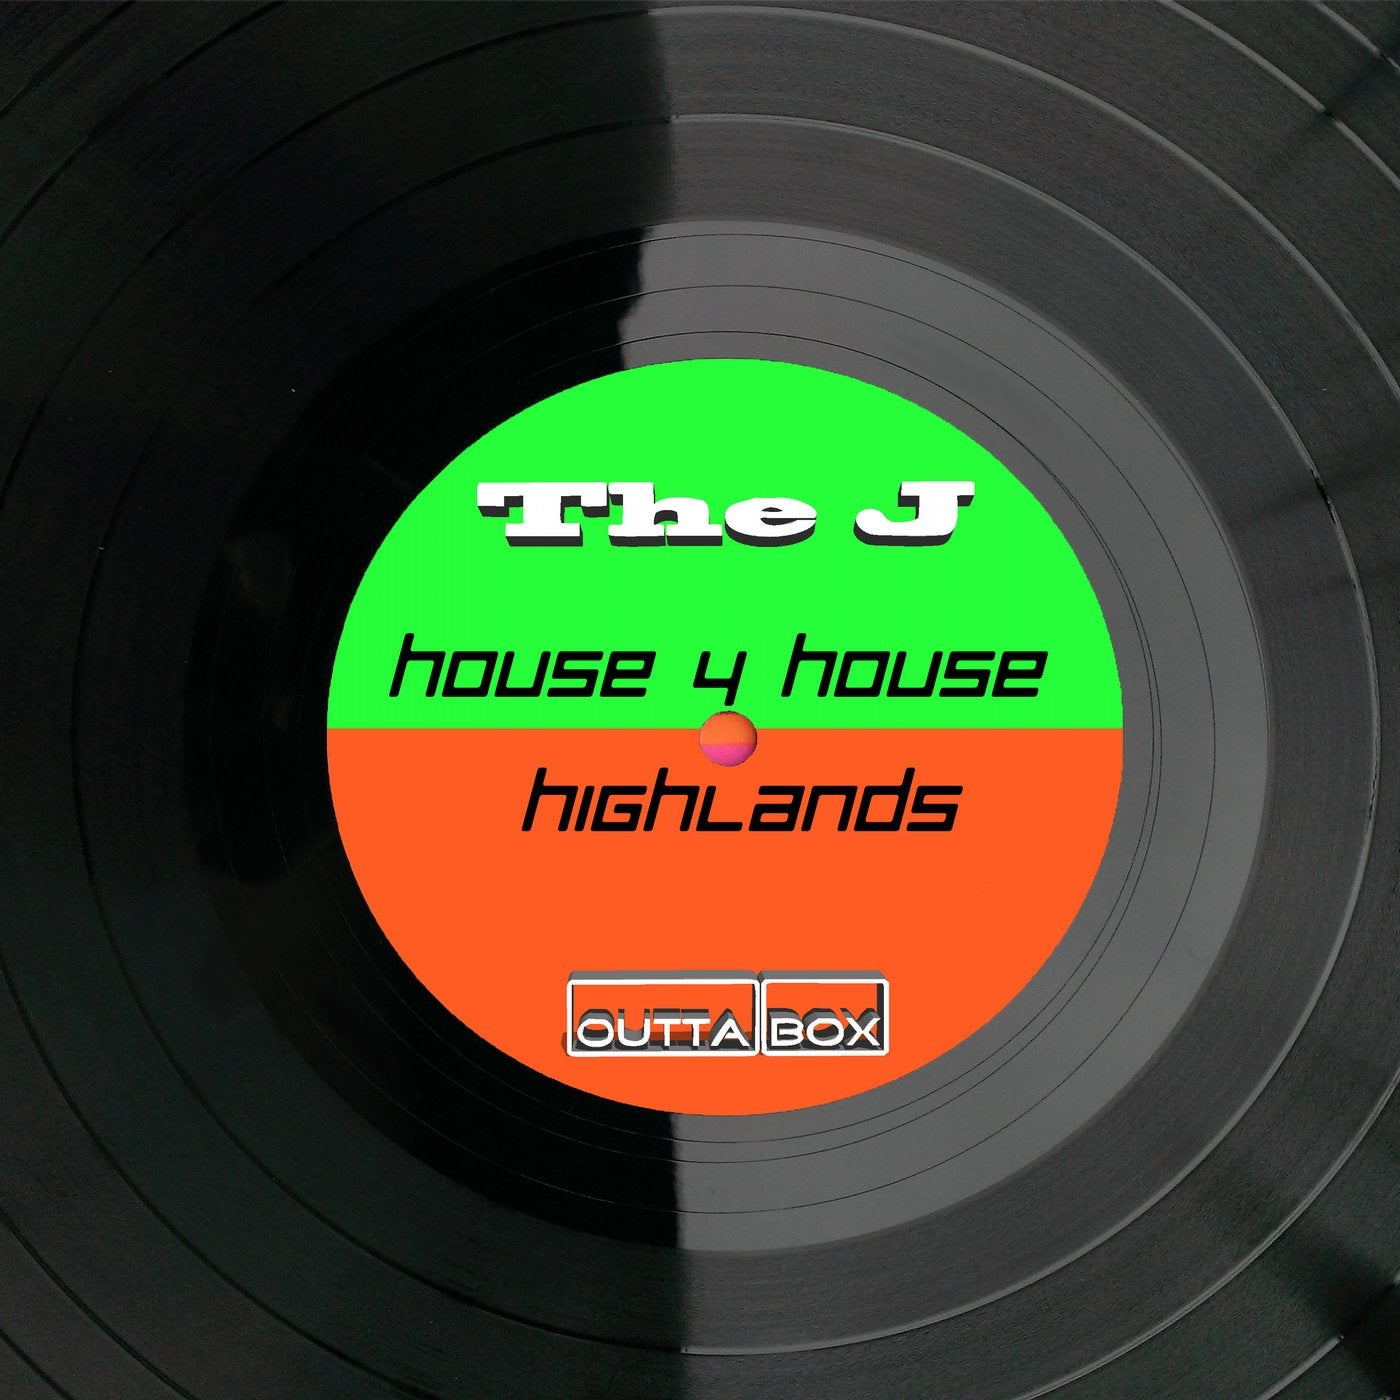 House 4 House